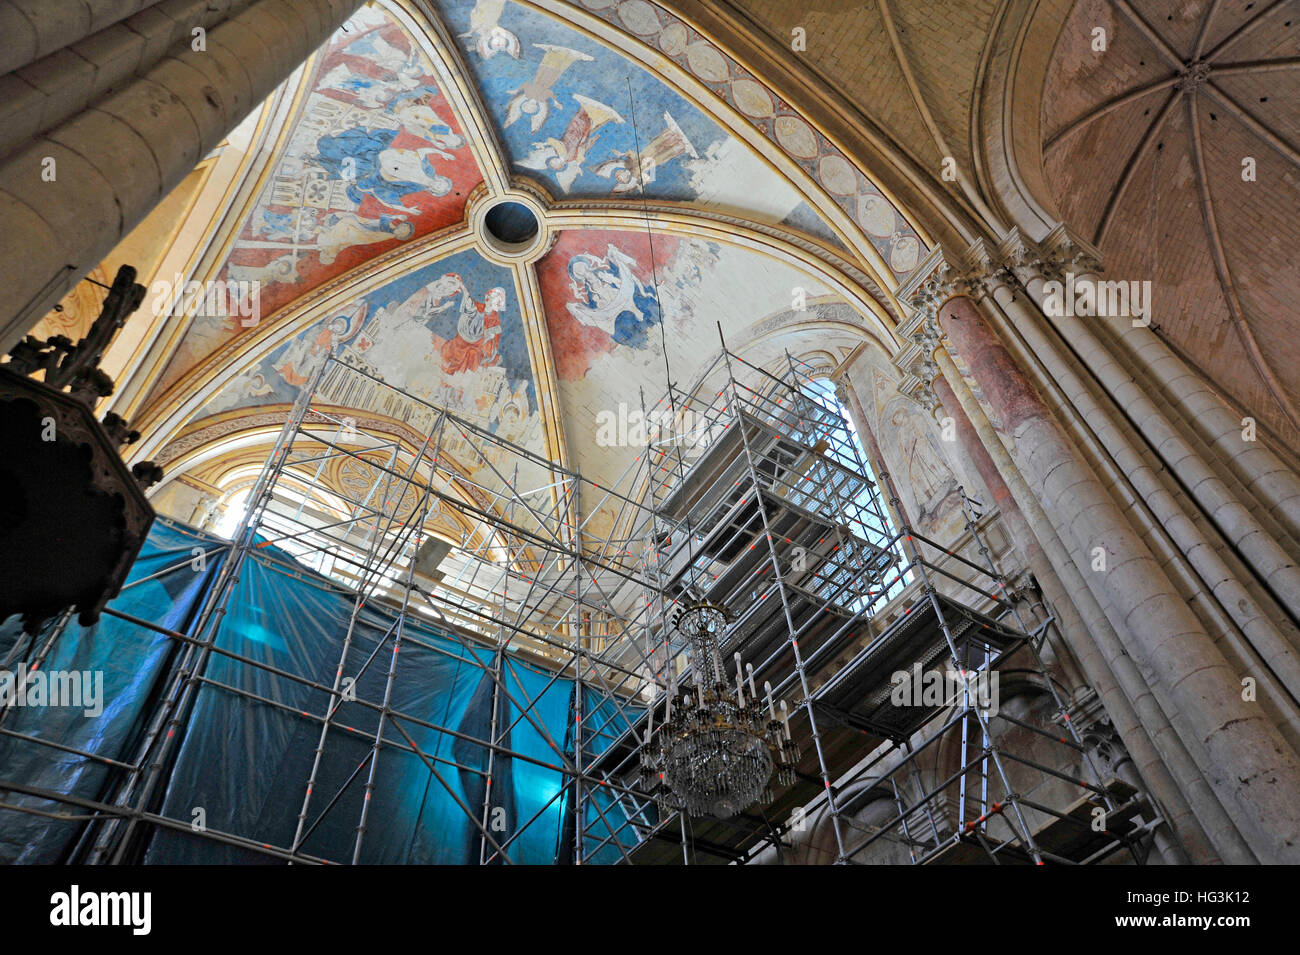 Des rénovations intérieures dans la cathédrale St-Pierre Poitiers France Banque D'Images